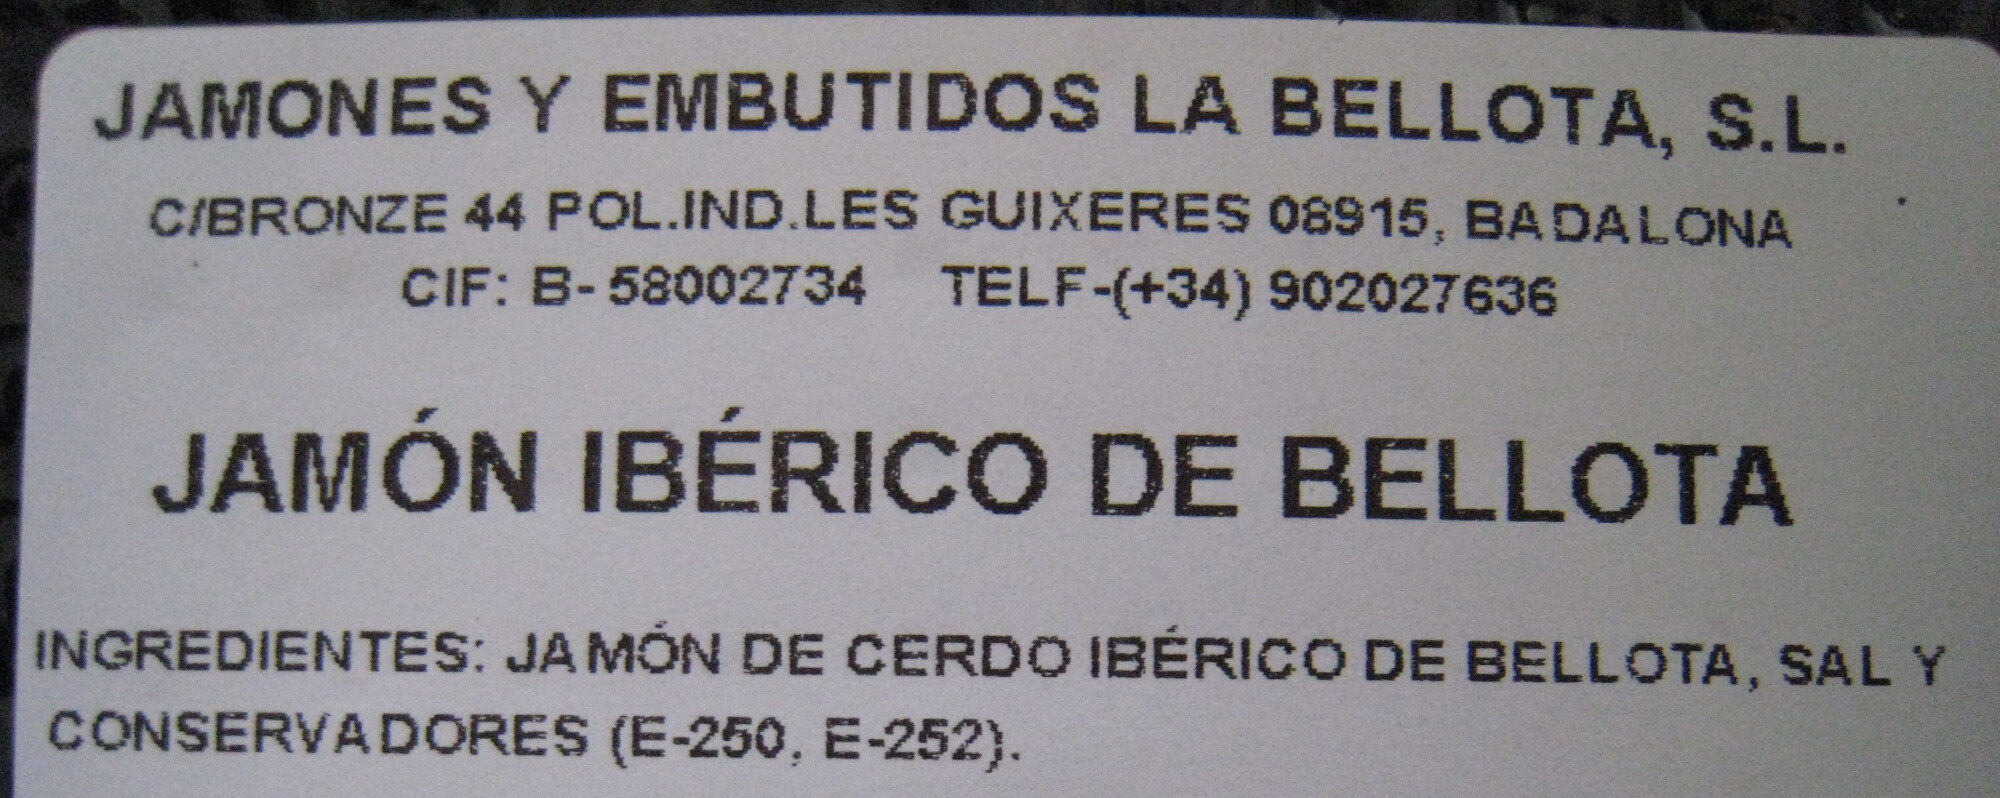 Jamón Ibérico 100 g de Bellota - Ingredients - es